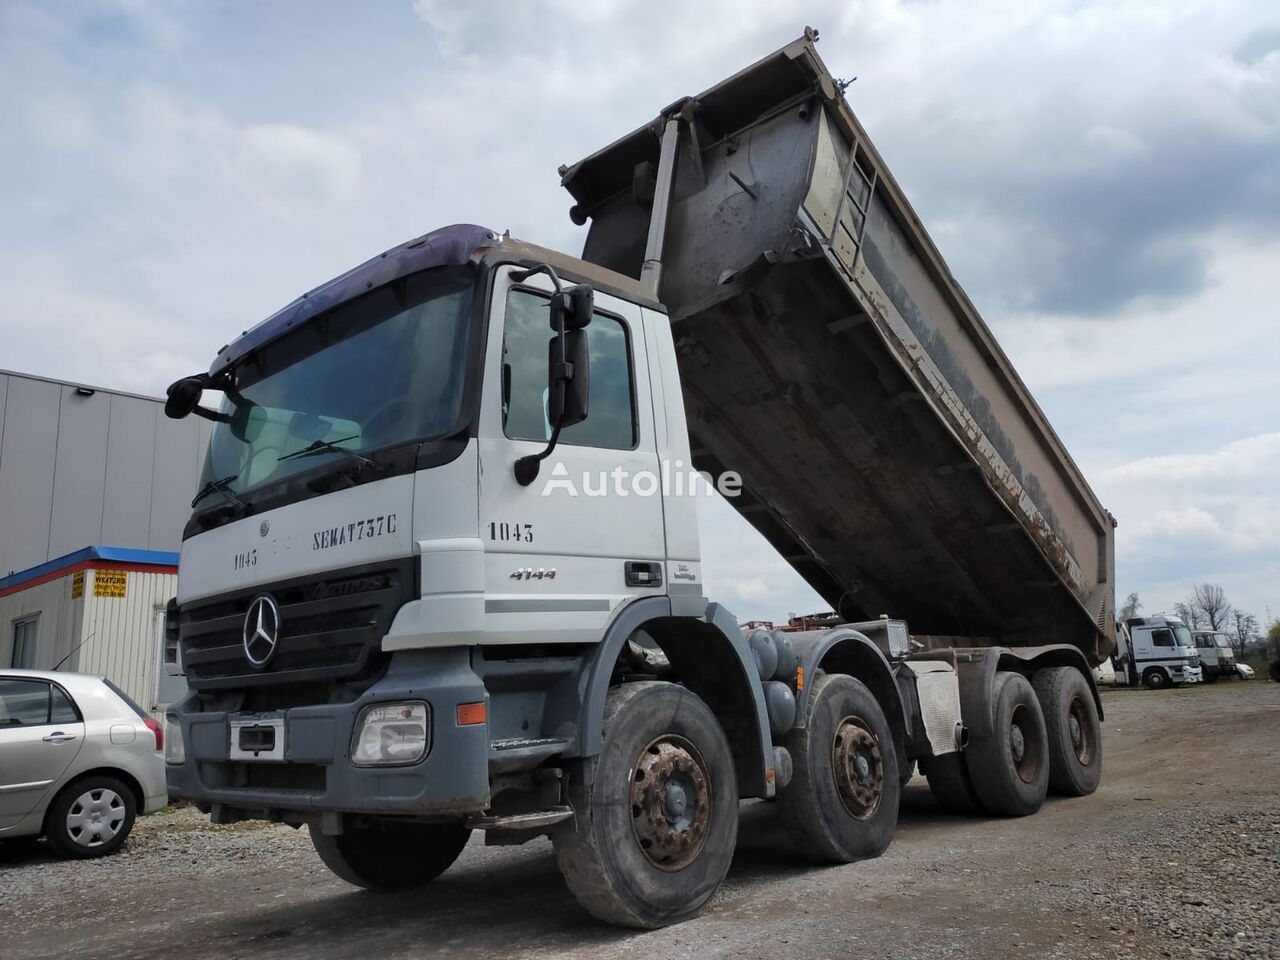 MERCEDESBENZ Actros 4144 dump truck for sale Belgium